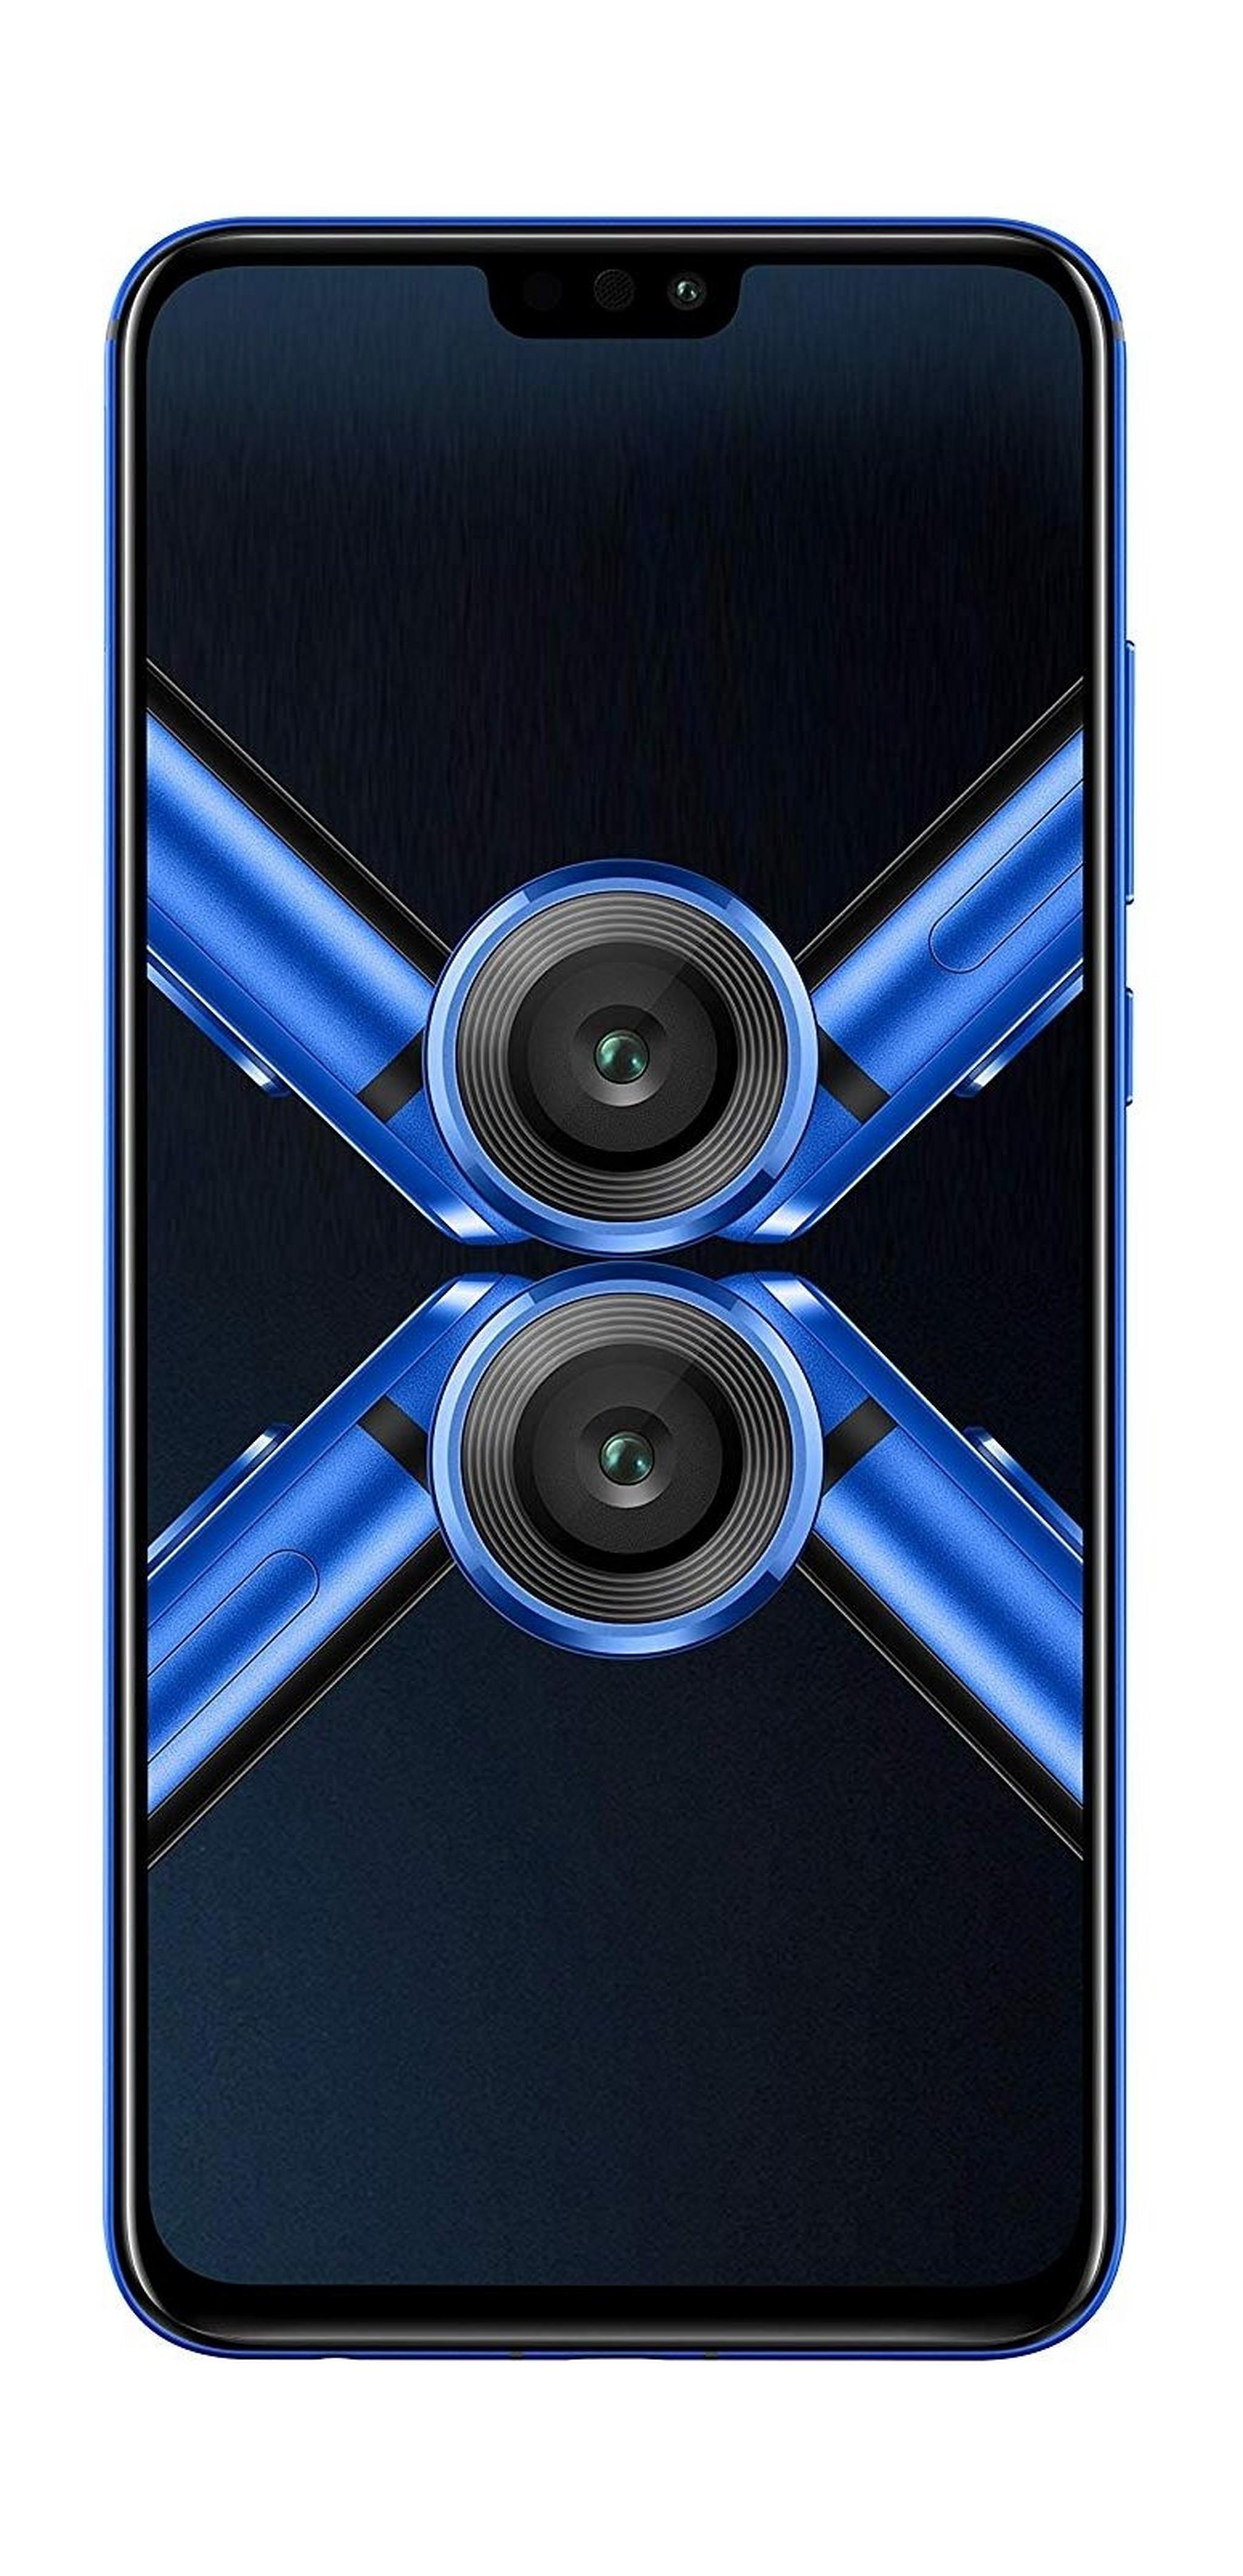 HONOR 8X 128GB Phone - Phantom Blue